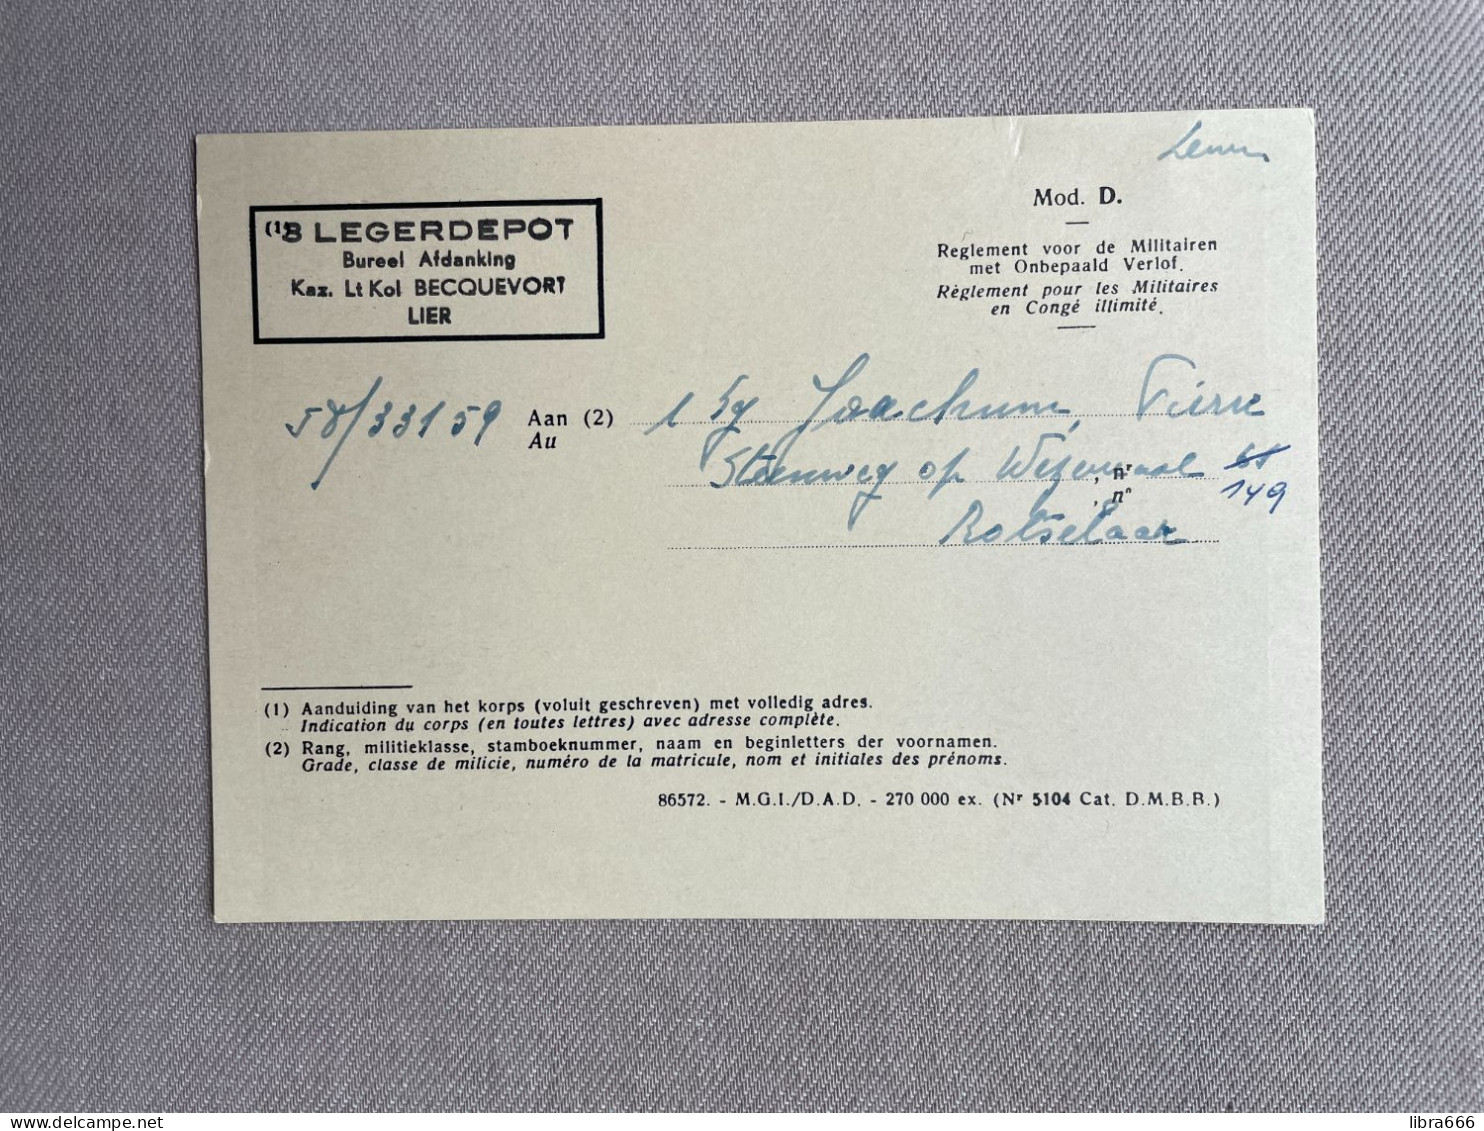 1972 JOACHUM Pierre - BILJET VOOR DEFINITIEF VERLOF-TITRE DE CONGE DEFINITIF / 3 LEGERDEPOT, Kaz. Lt Kol Becquevort LIER - Documents